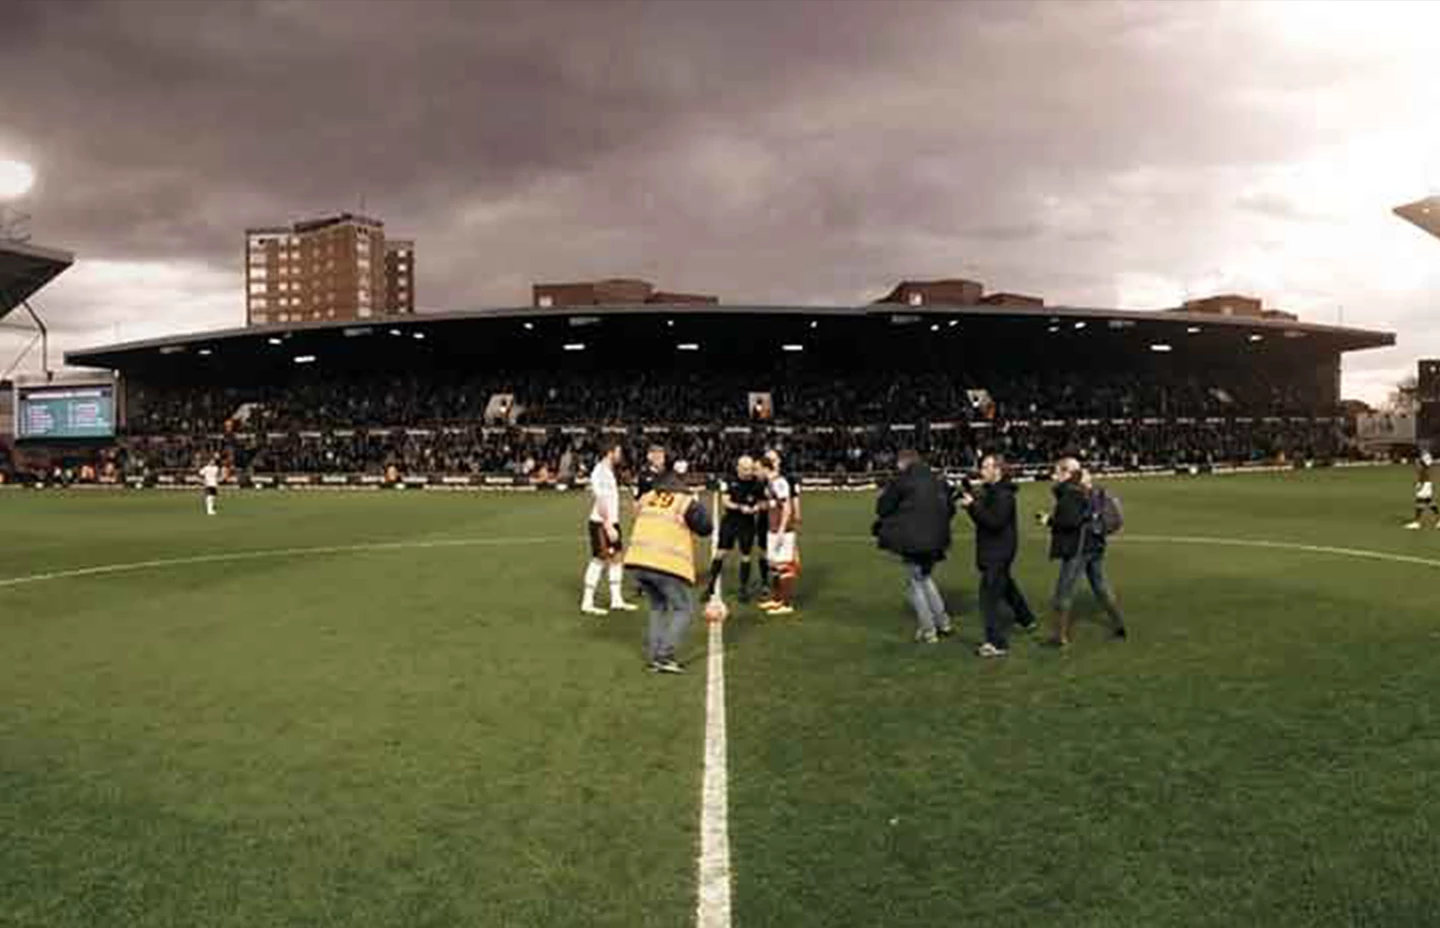 Kick off at West Ham United stadium